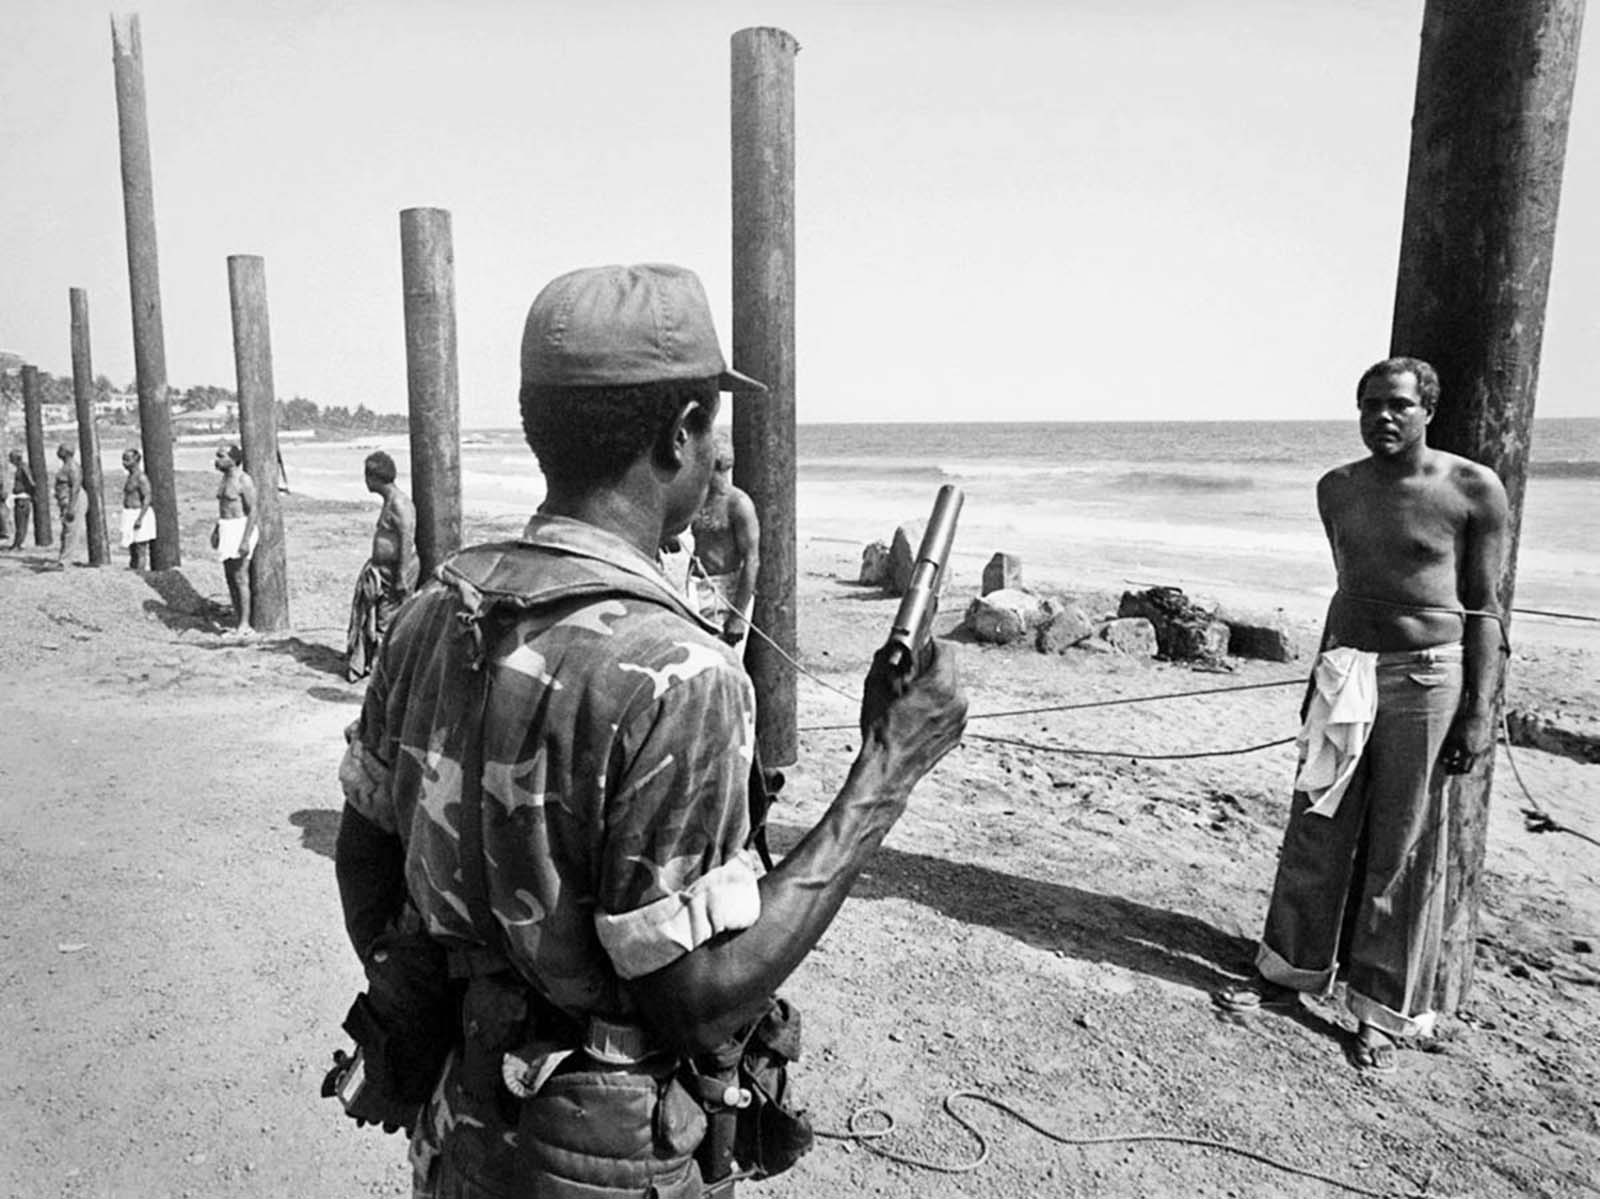 Les ministres de la queue pour l'exécution après le coup d'état au Libéria, 1980